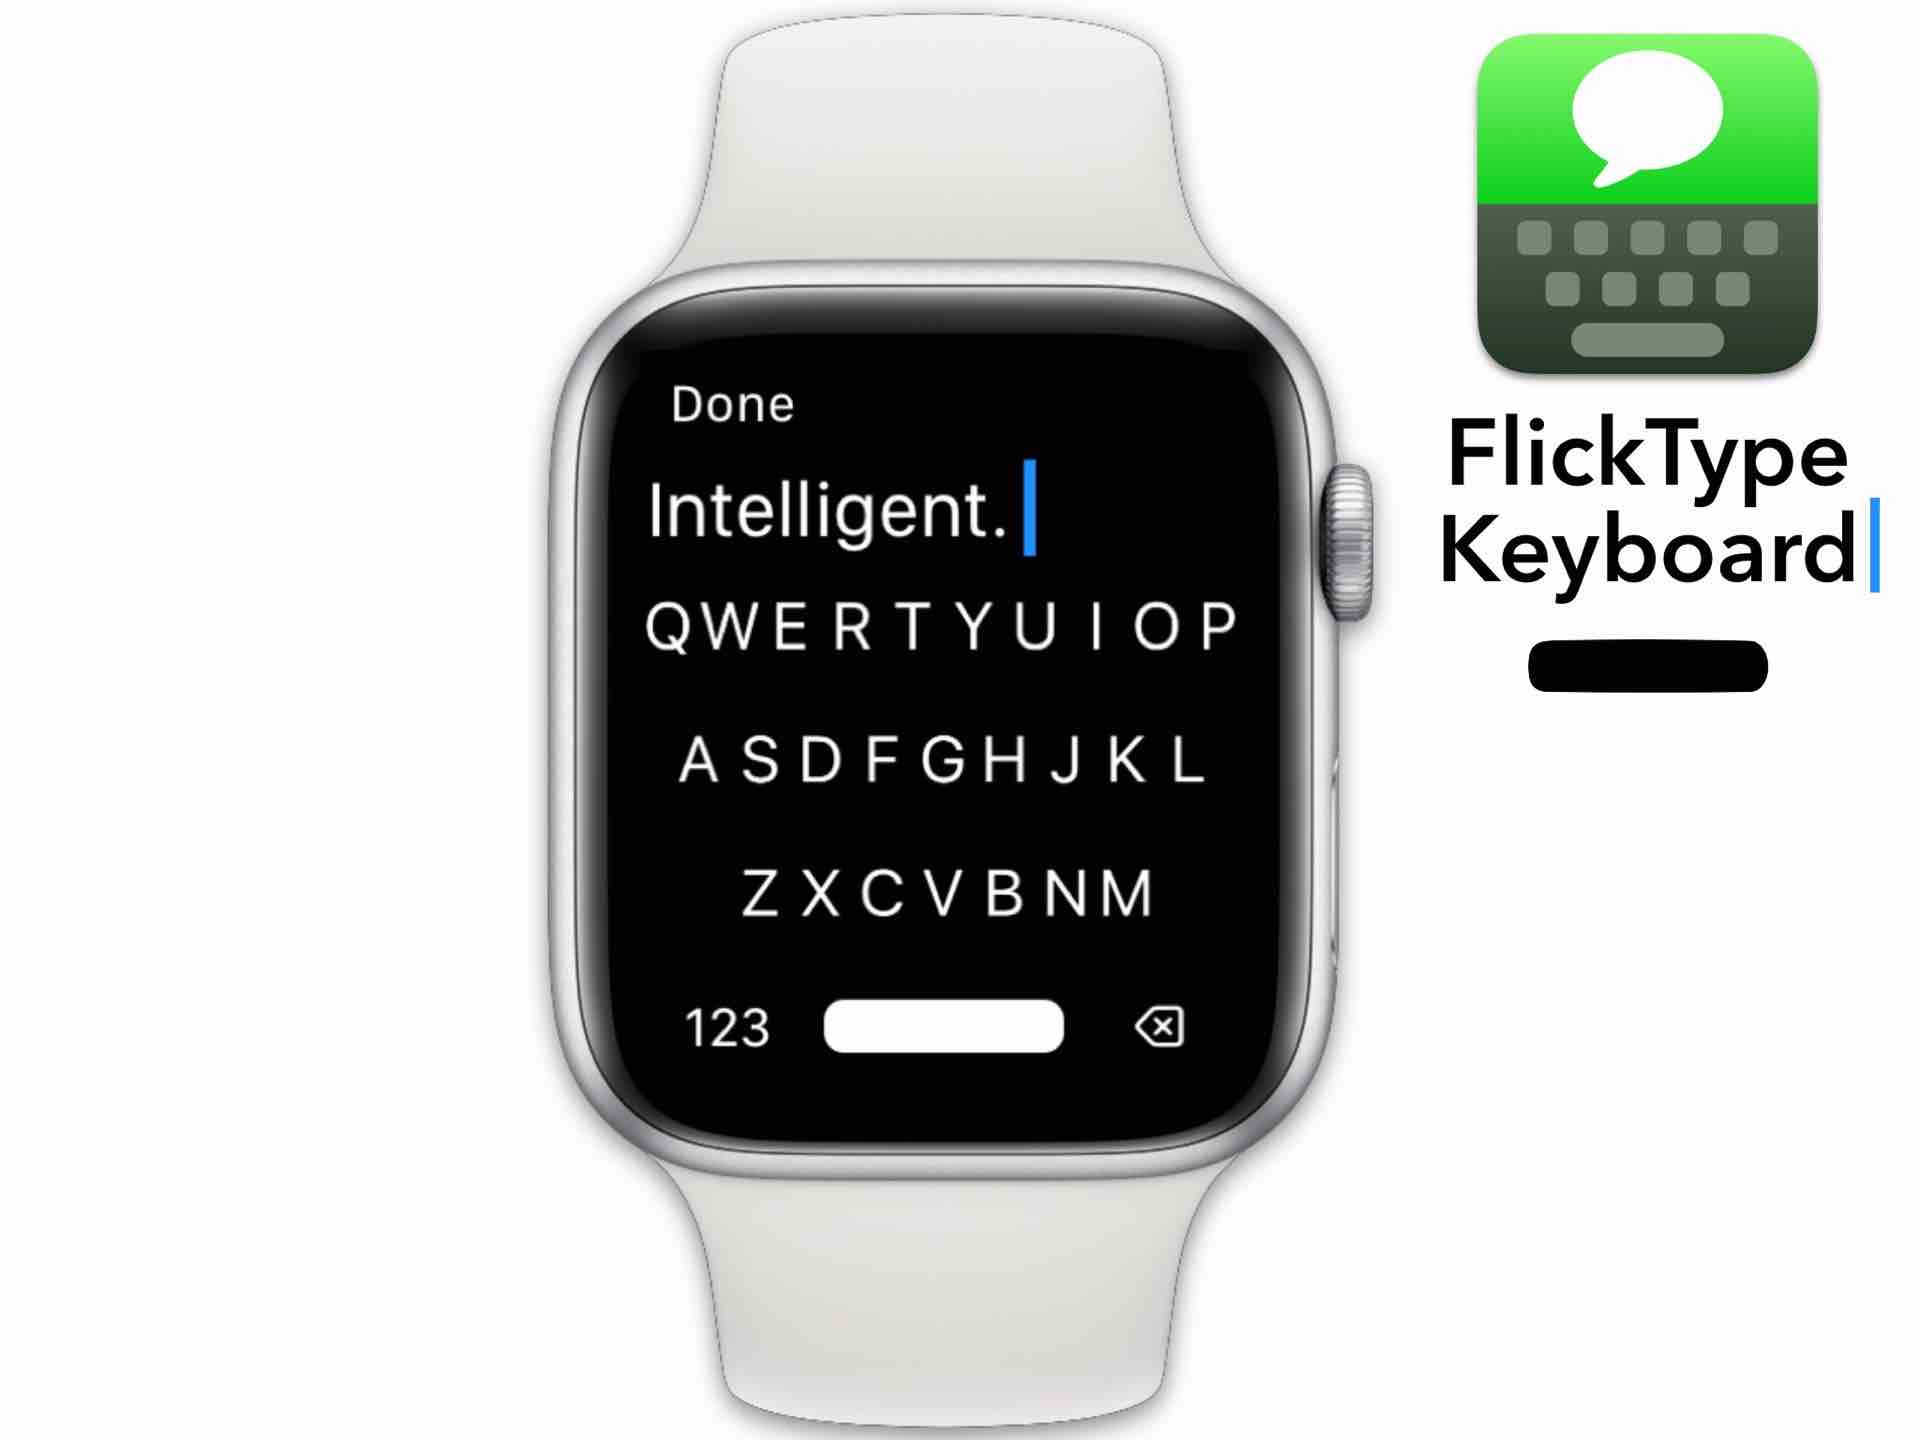 flicktype-keyboard-for-apple-watch